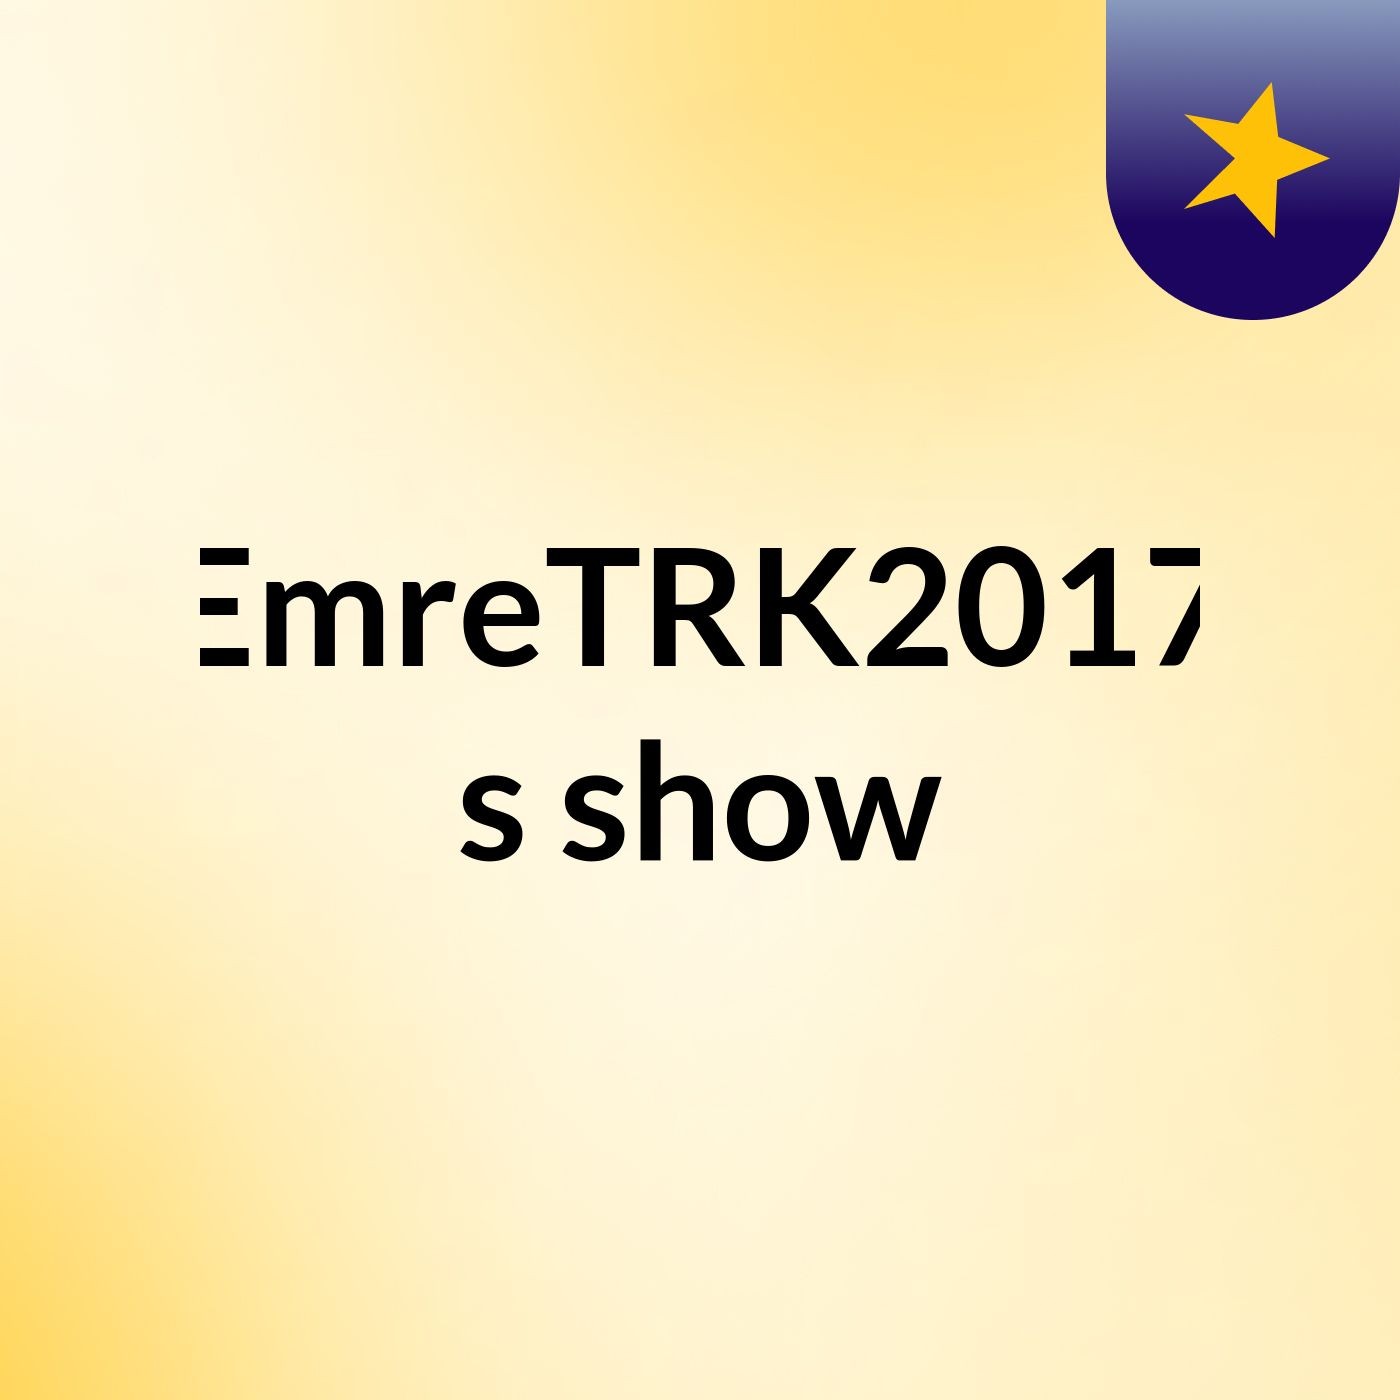 EmreTRK2017's show